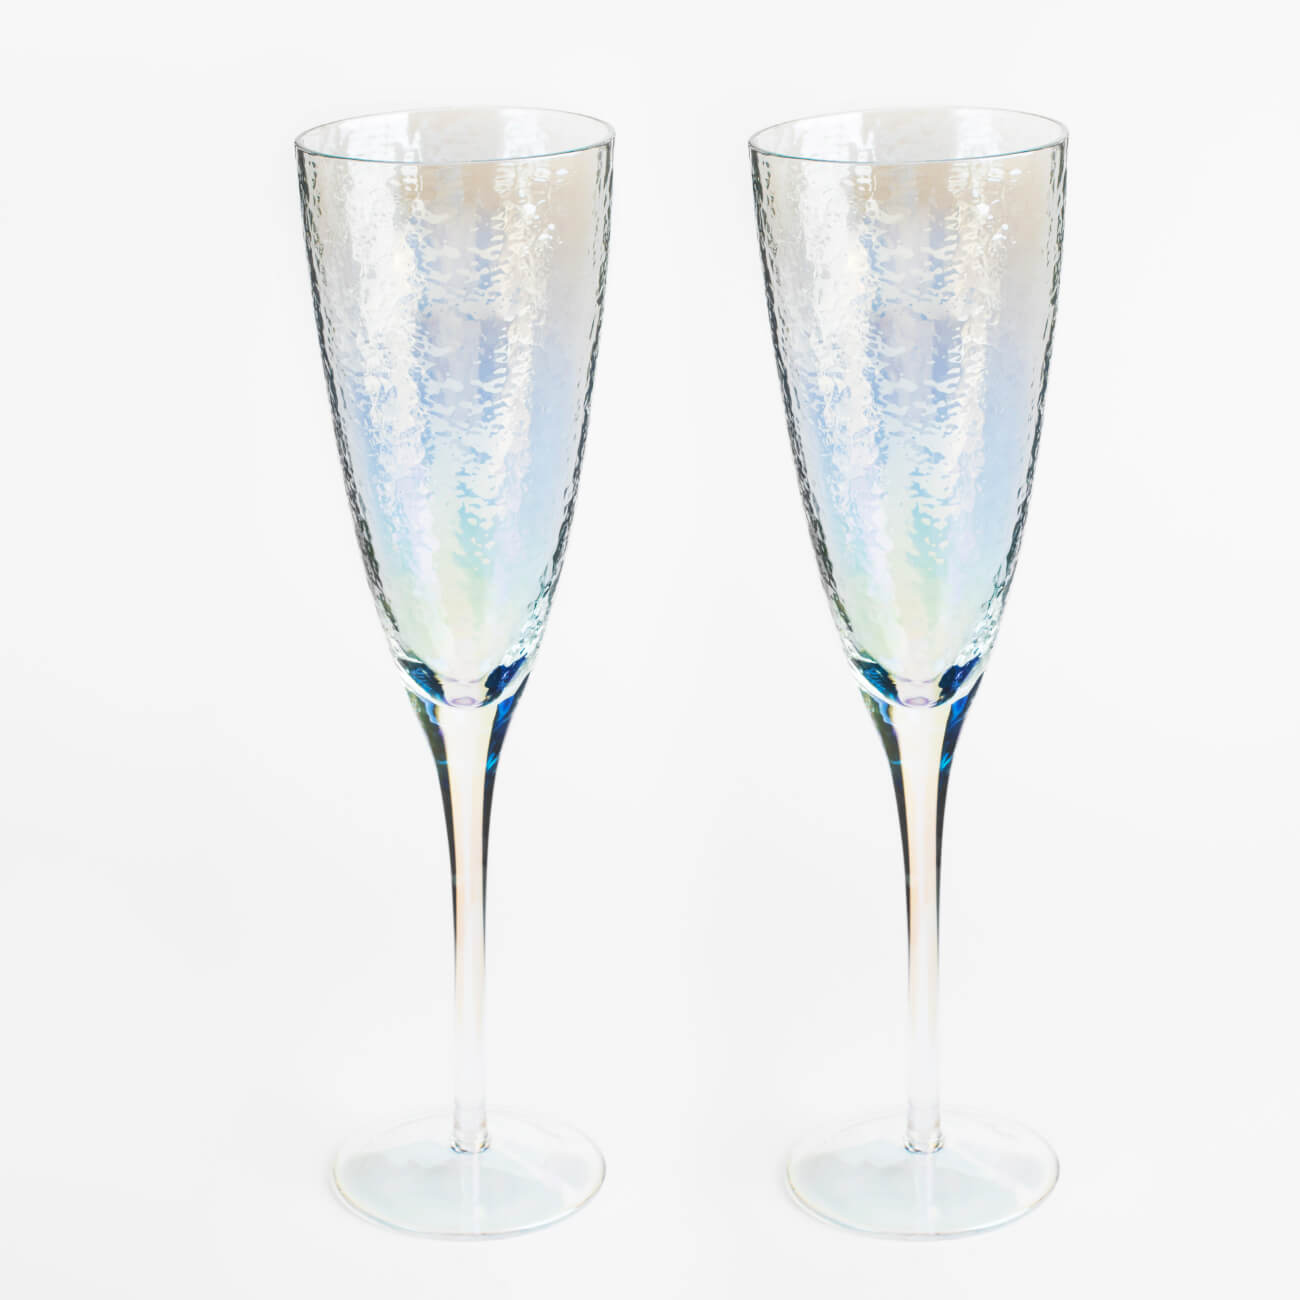 стакан для виски 270 мл 2 шт стекло ripply Бокал для шампанского, 275 мл, 2 шт, стекло, перламутр, Ripply polar